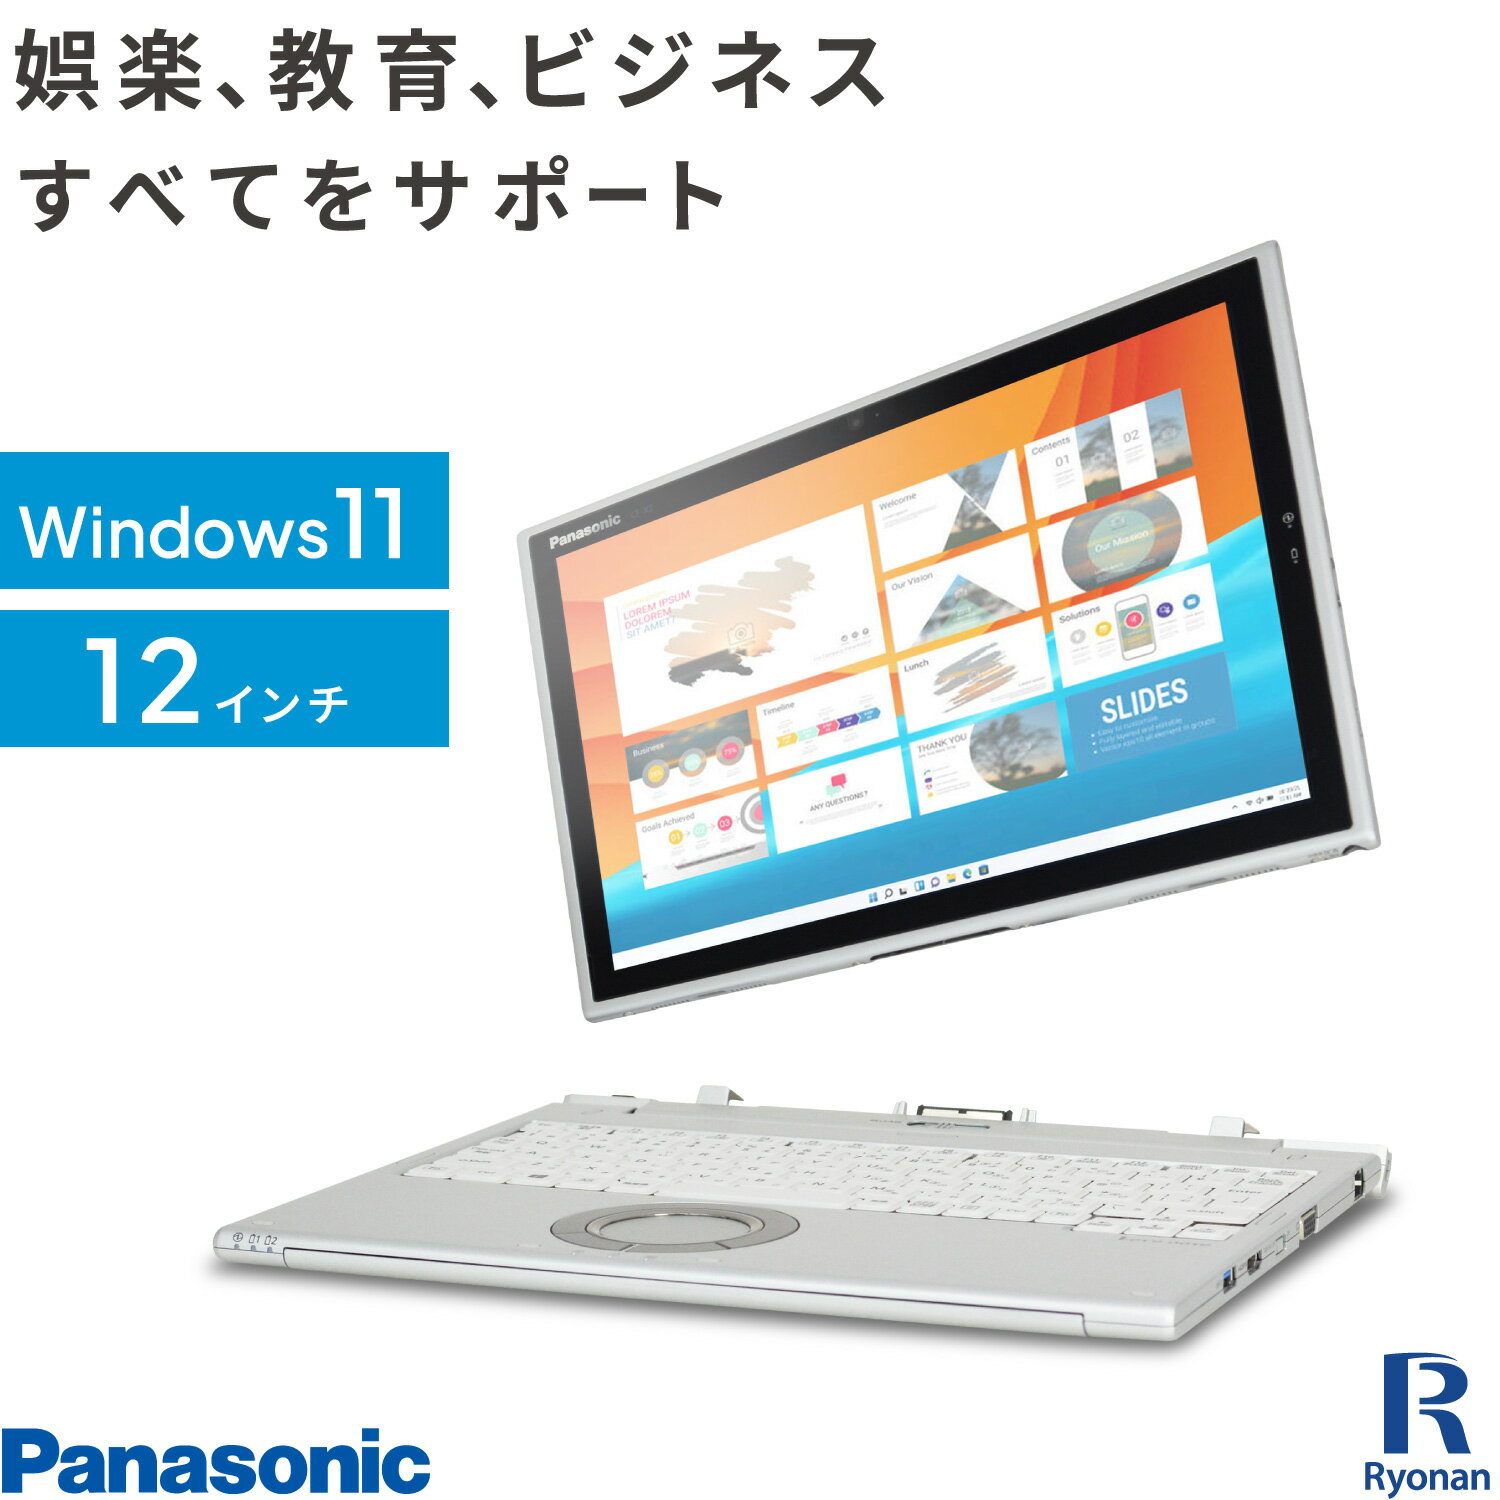 【10%OFFクーポン配布中】【WEBカメラ / 専用キーボード 付】Panasonic レッツノート CF-XZ6 第7世代 Core i5 メモリ:8GB M.2 SSD:128G..